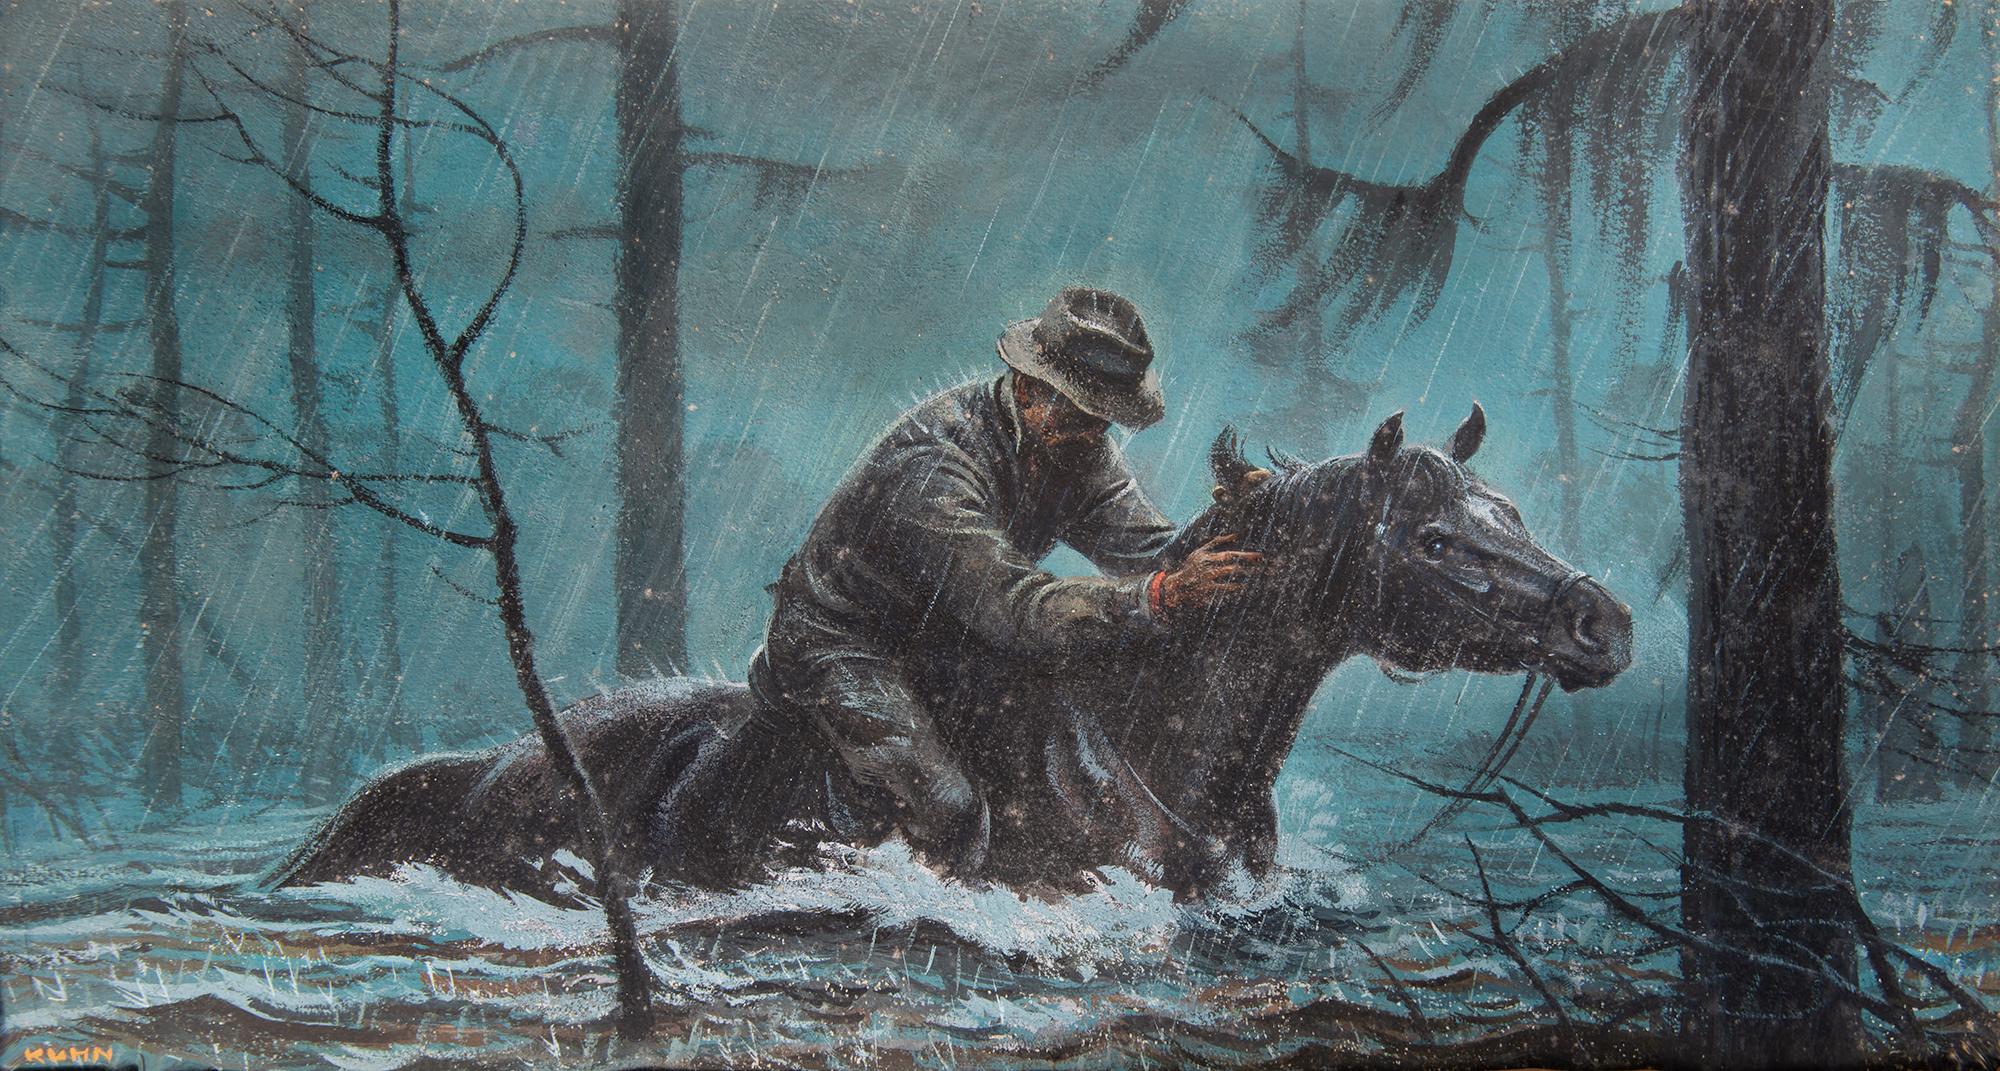 Animal Painting Bob Kuhn - Cowboy à cheval dans la pluie